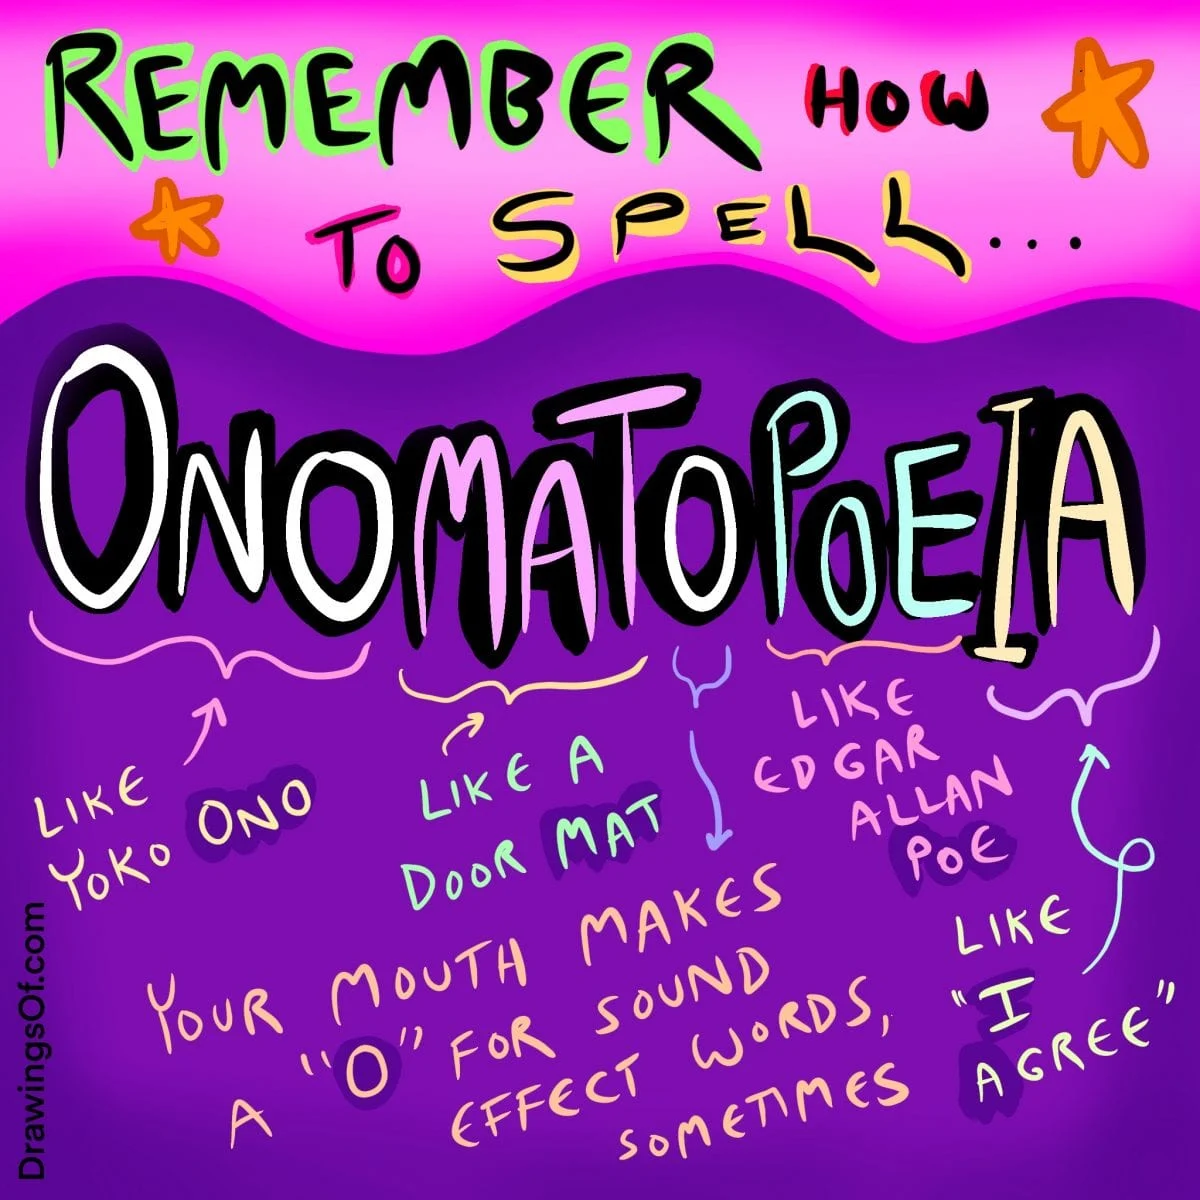 How to spell Onomatopoeia